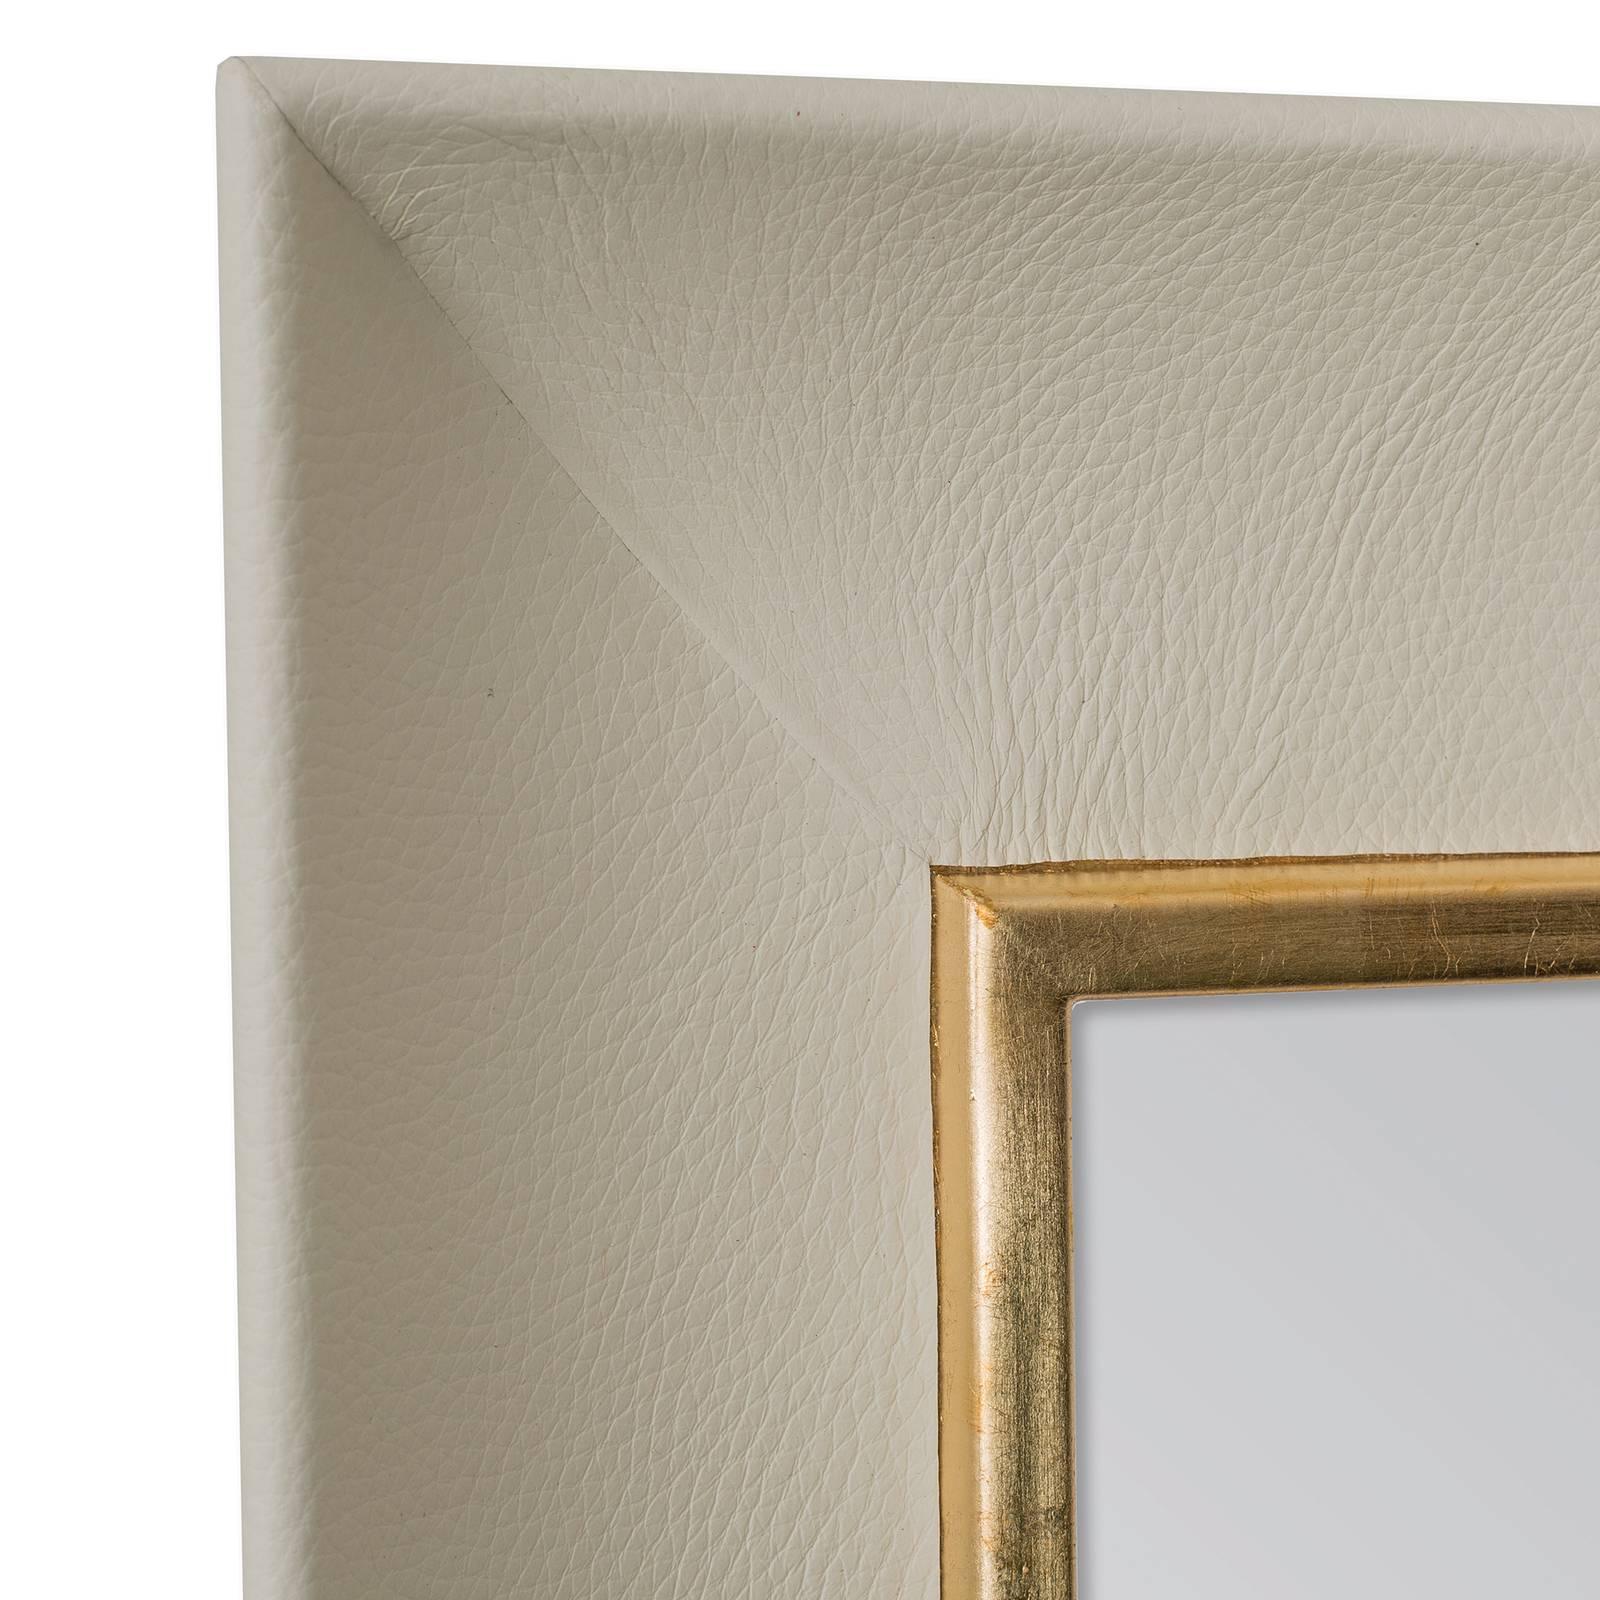 Dieser Spiegel kombiniert die verschiedenen Texturen von Metall und Leder und ist ein atemberaubender moderner Akzent für ein Wohnzimmer, ein Schlafzimmer oder einen Eingangsbereich. Der minimalistische Rahmen ist mit feinem und weichem Echtleder in